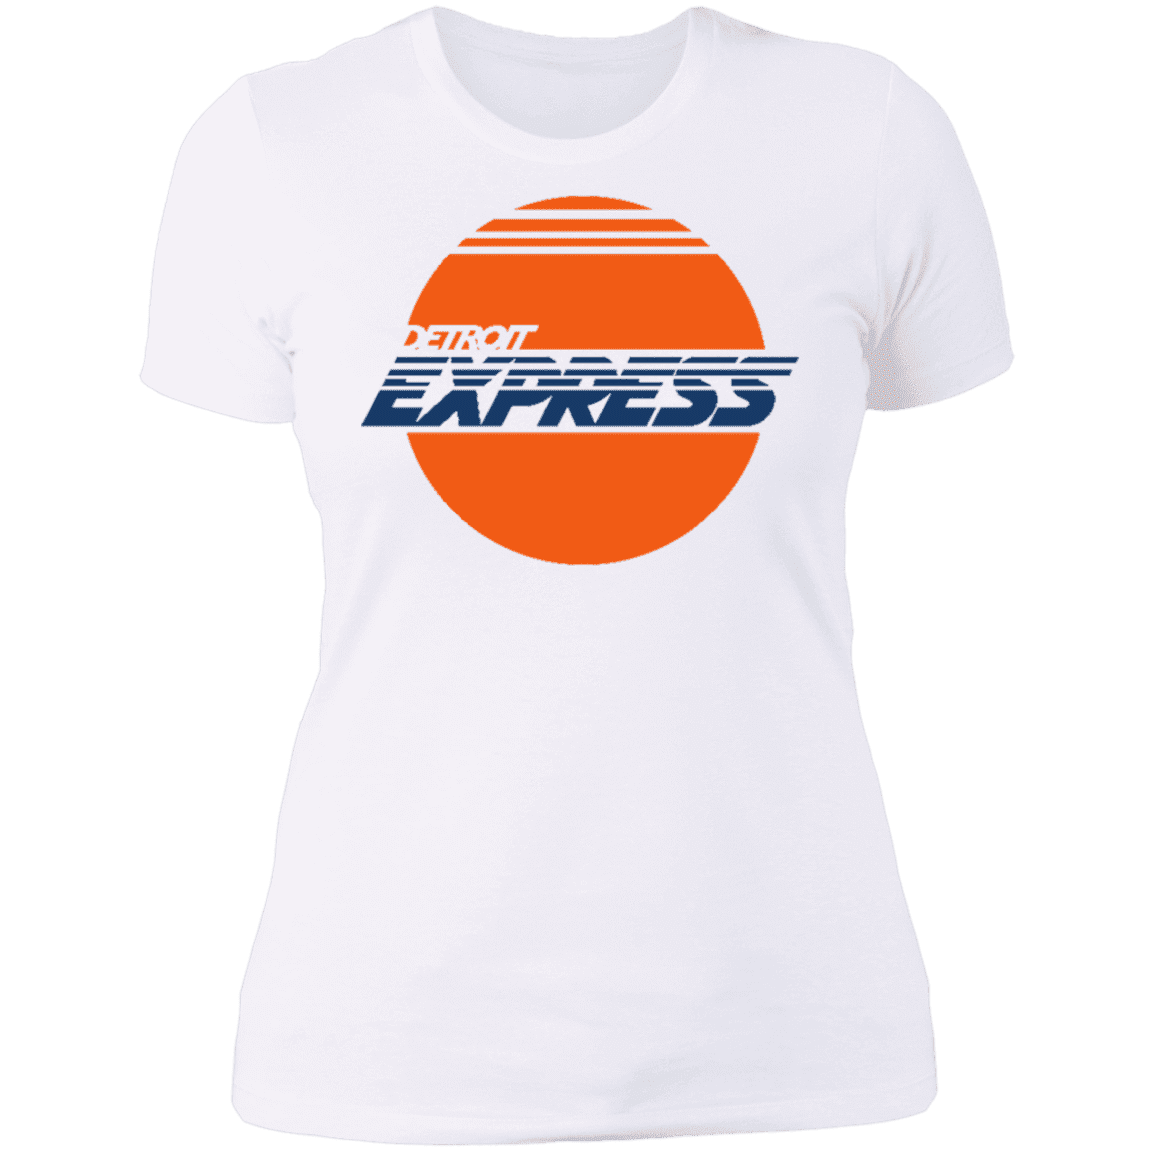 detroit express jersey